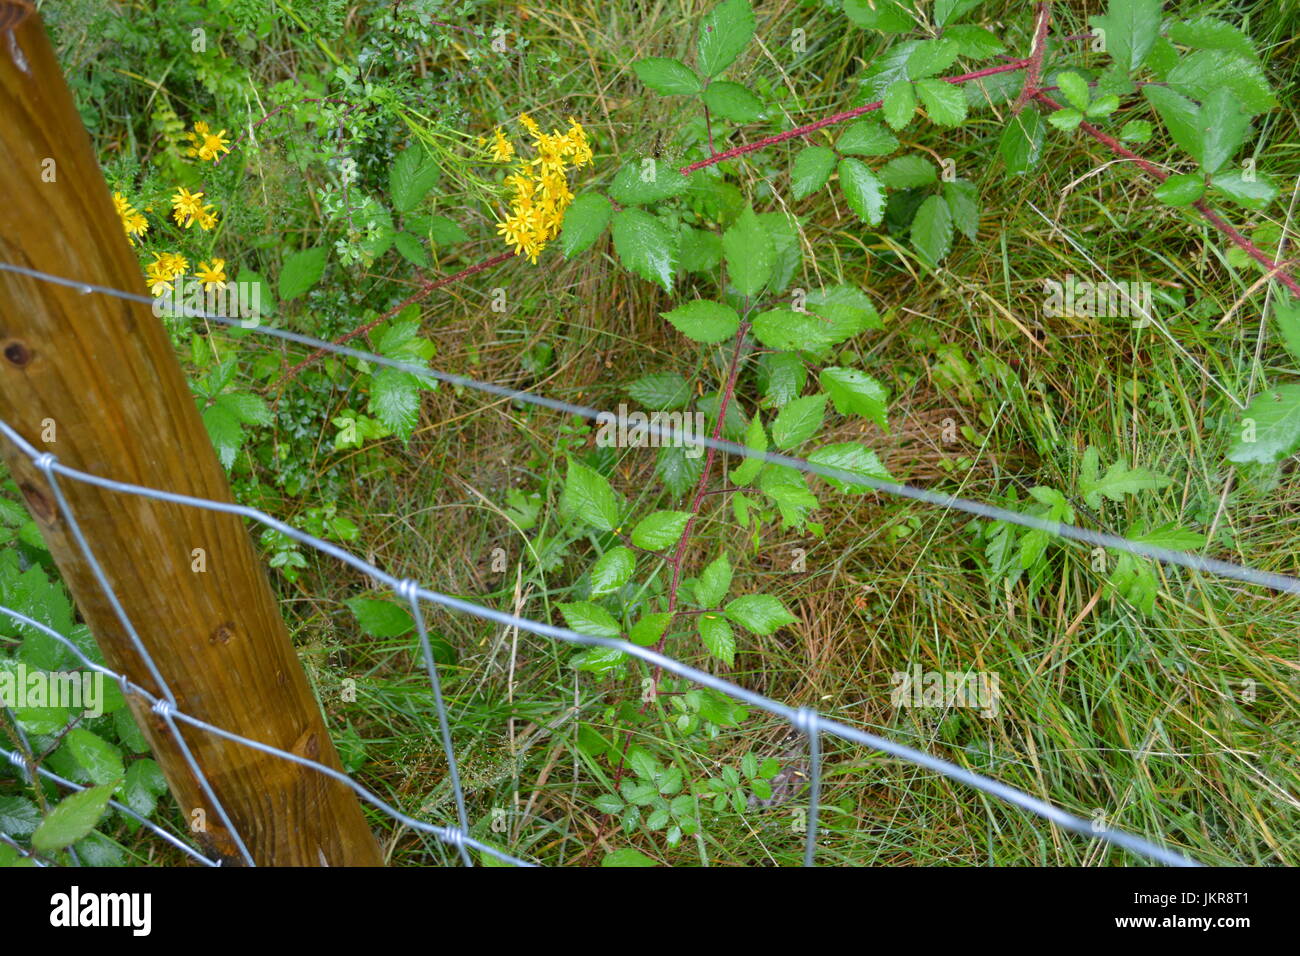 Lager zaun Einzäunung mit Post aufrecht in Überwucherten reife wilden Garten mit Dornen wilden Blumen und Gras im Hintergrund re Grenze fechten UK Stockfoto